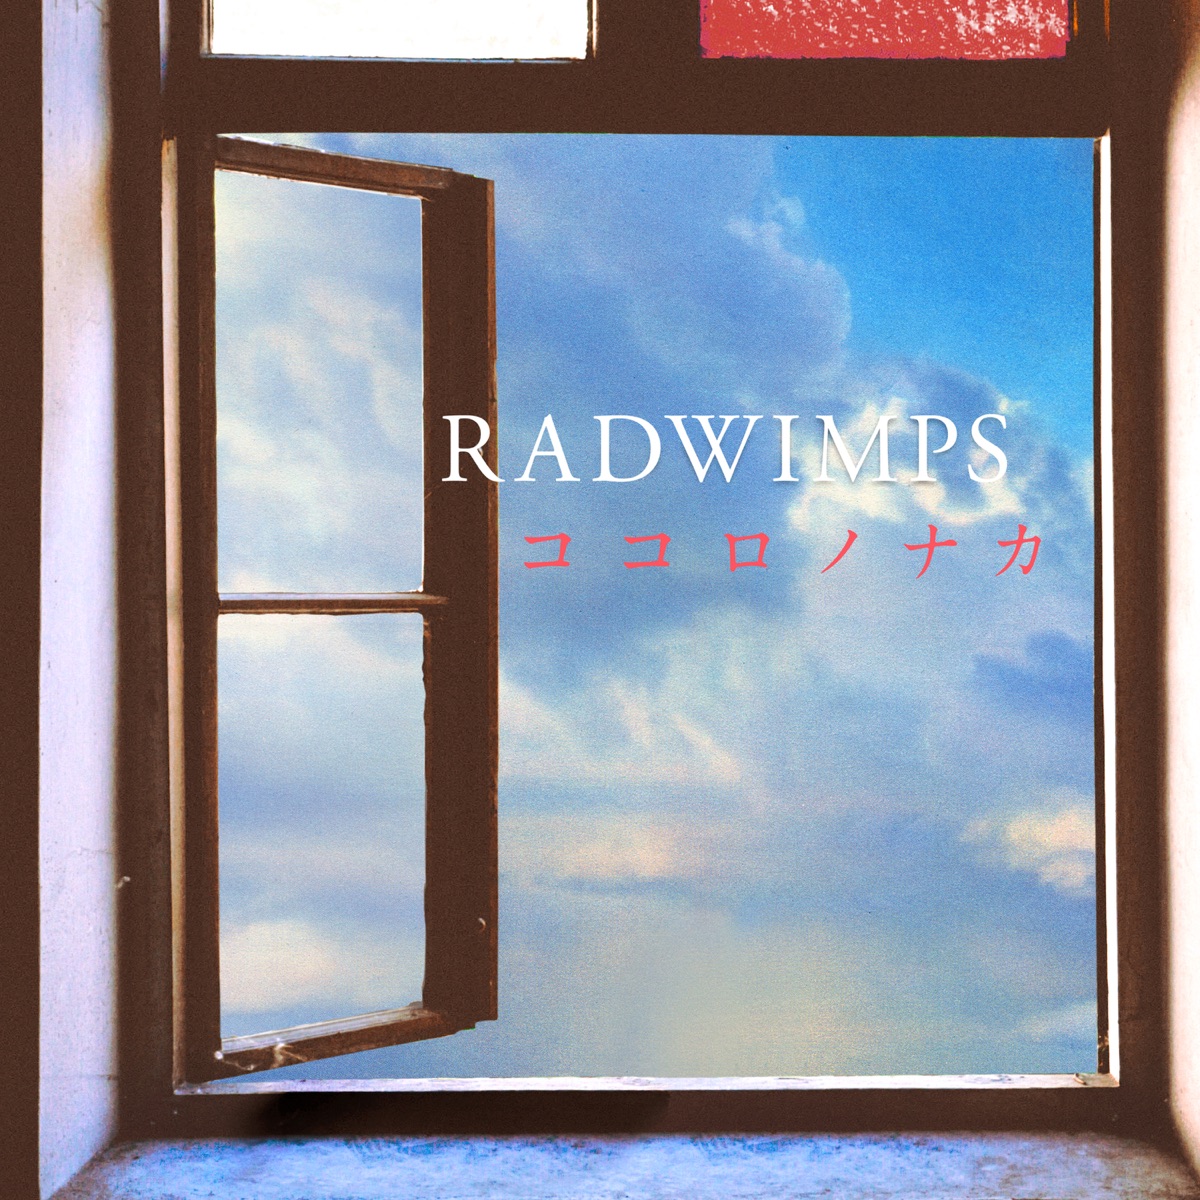 Cover art for『RADWIMPS - Cocorononaca』from the release『Kokoro no Naka』